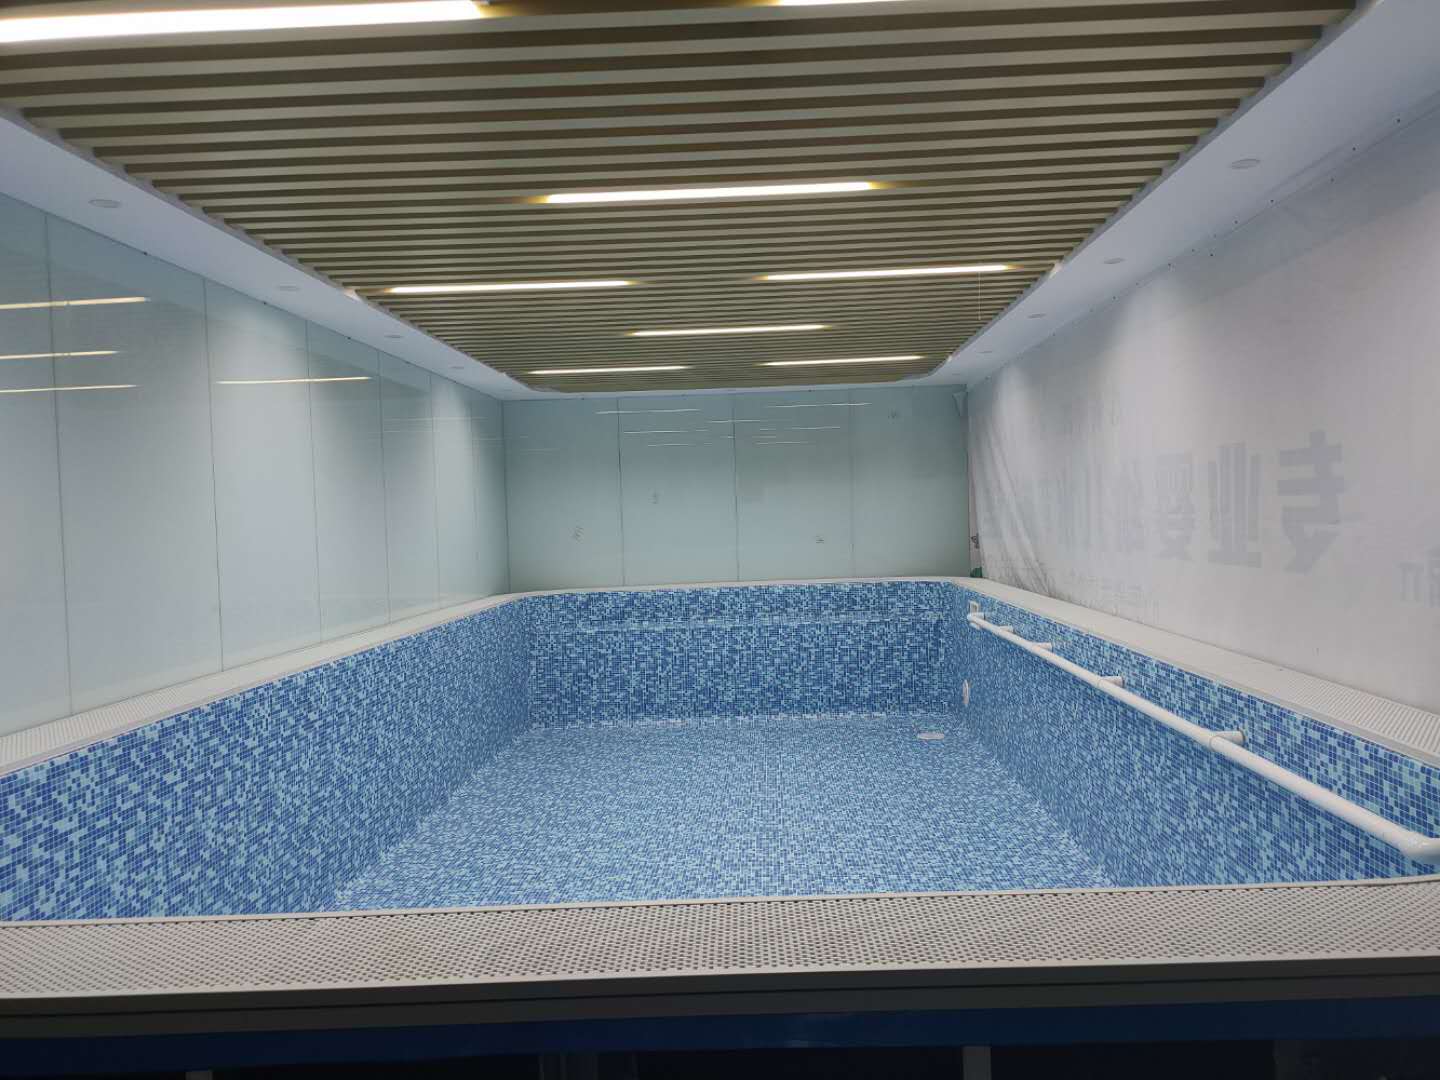 上海水育早教钢结构游泳池项目8米×4米